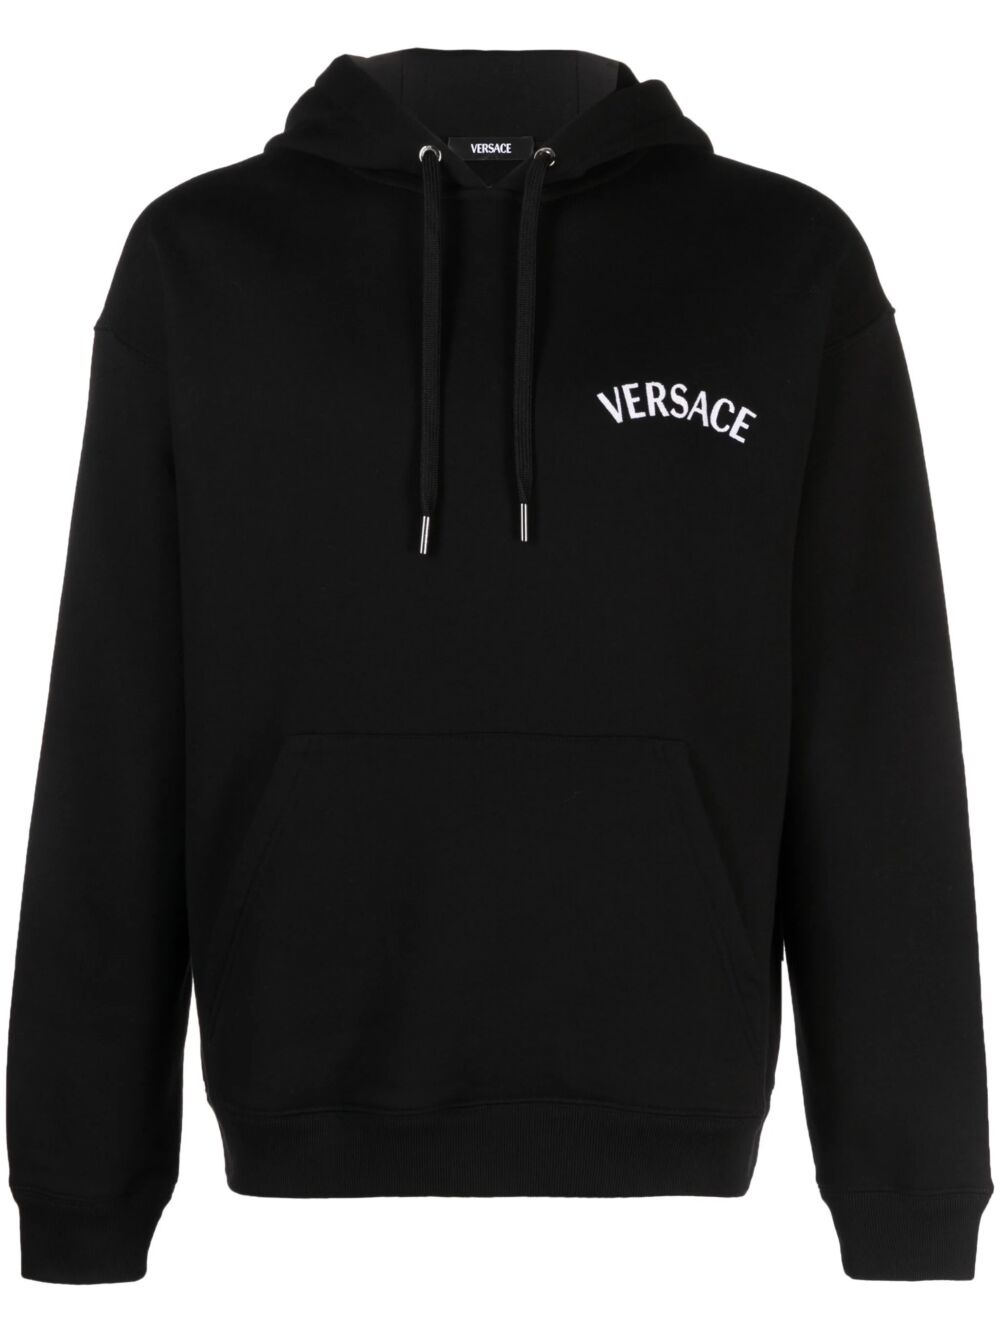 Versace milano hoodie - 1